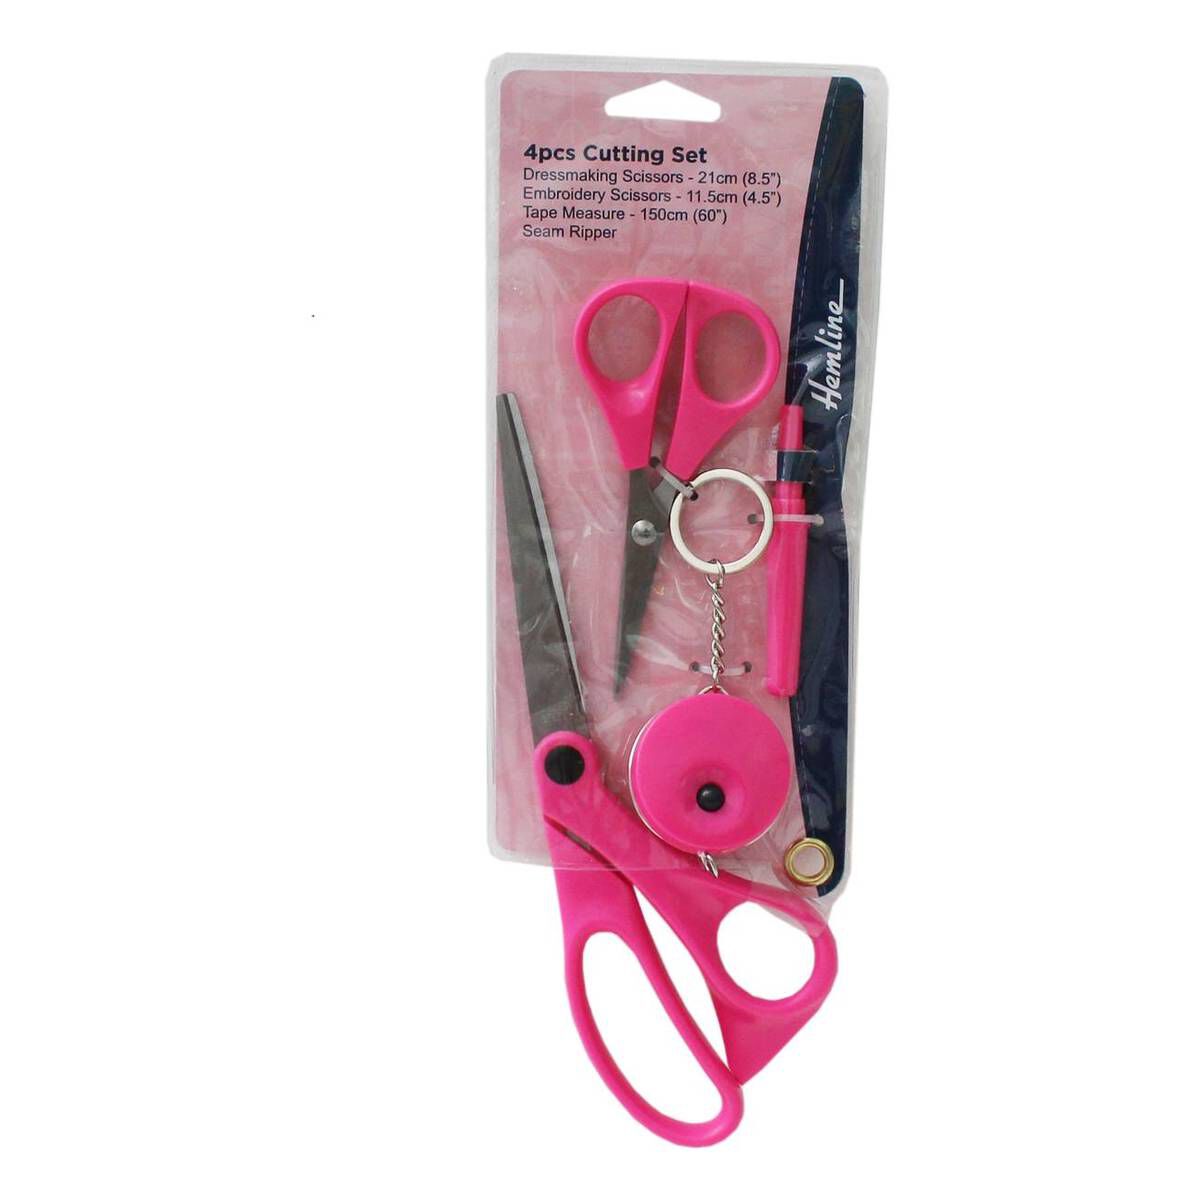 Hemline Neon Pink Cutting Set 4 Pieces | Hobbycraft